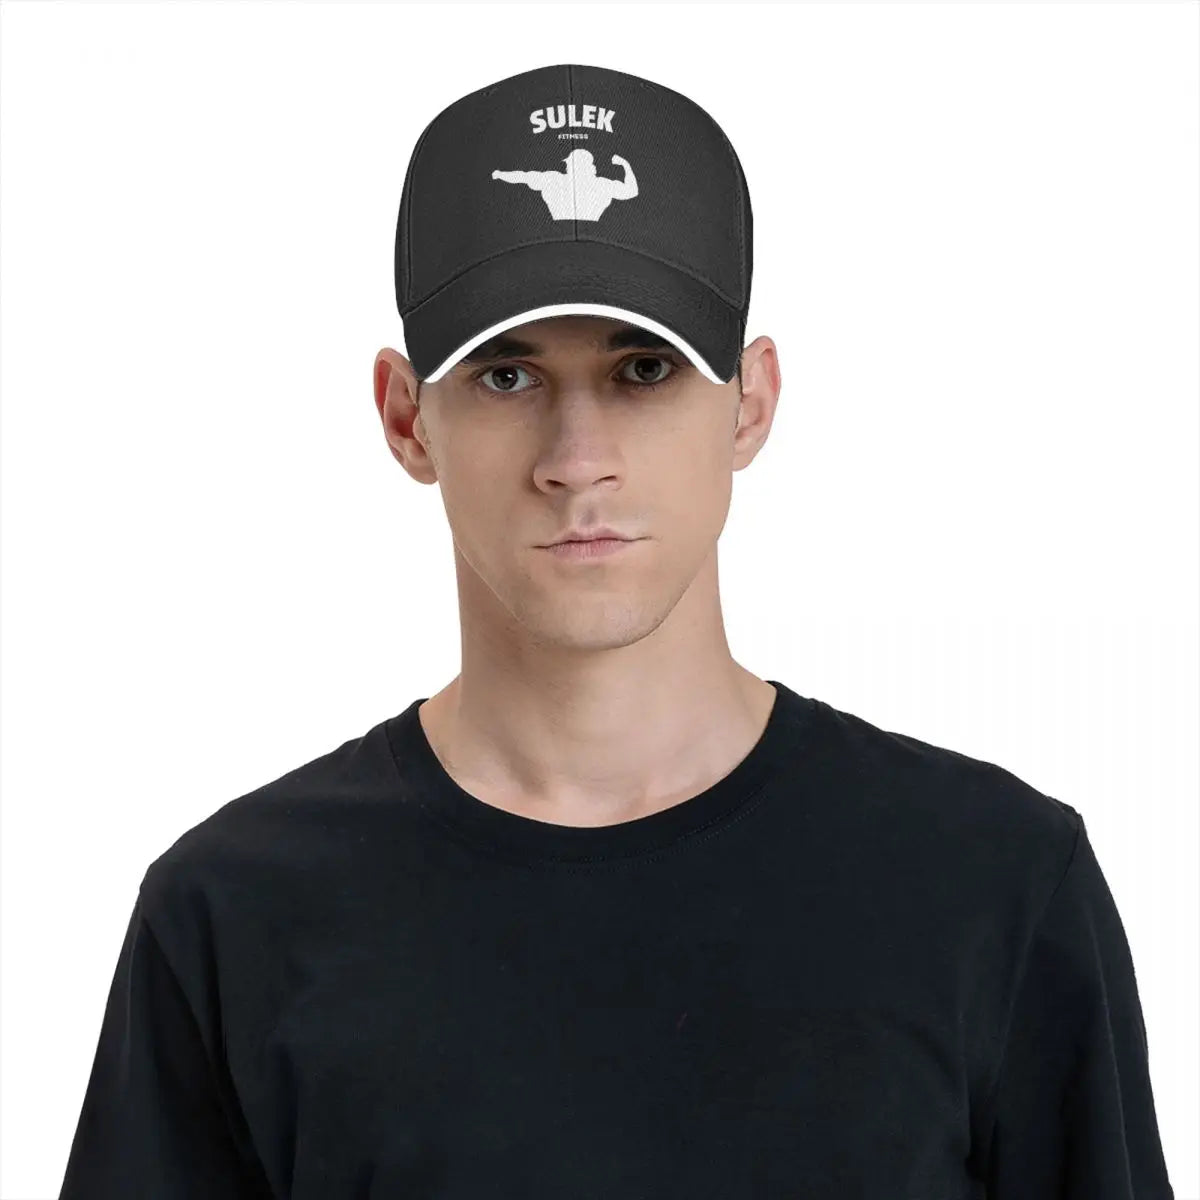 Sam Sulek Iconic Pose Hat (UNISEX)